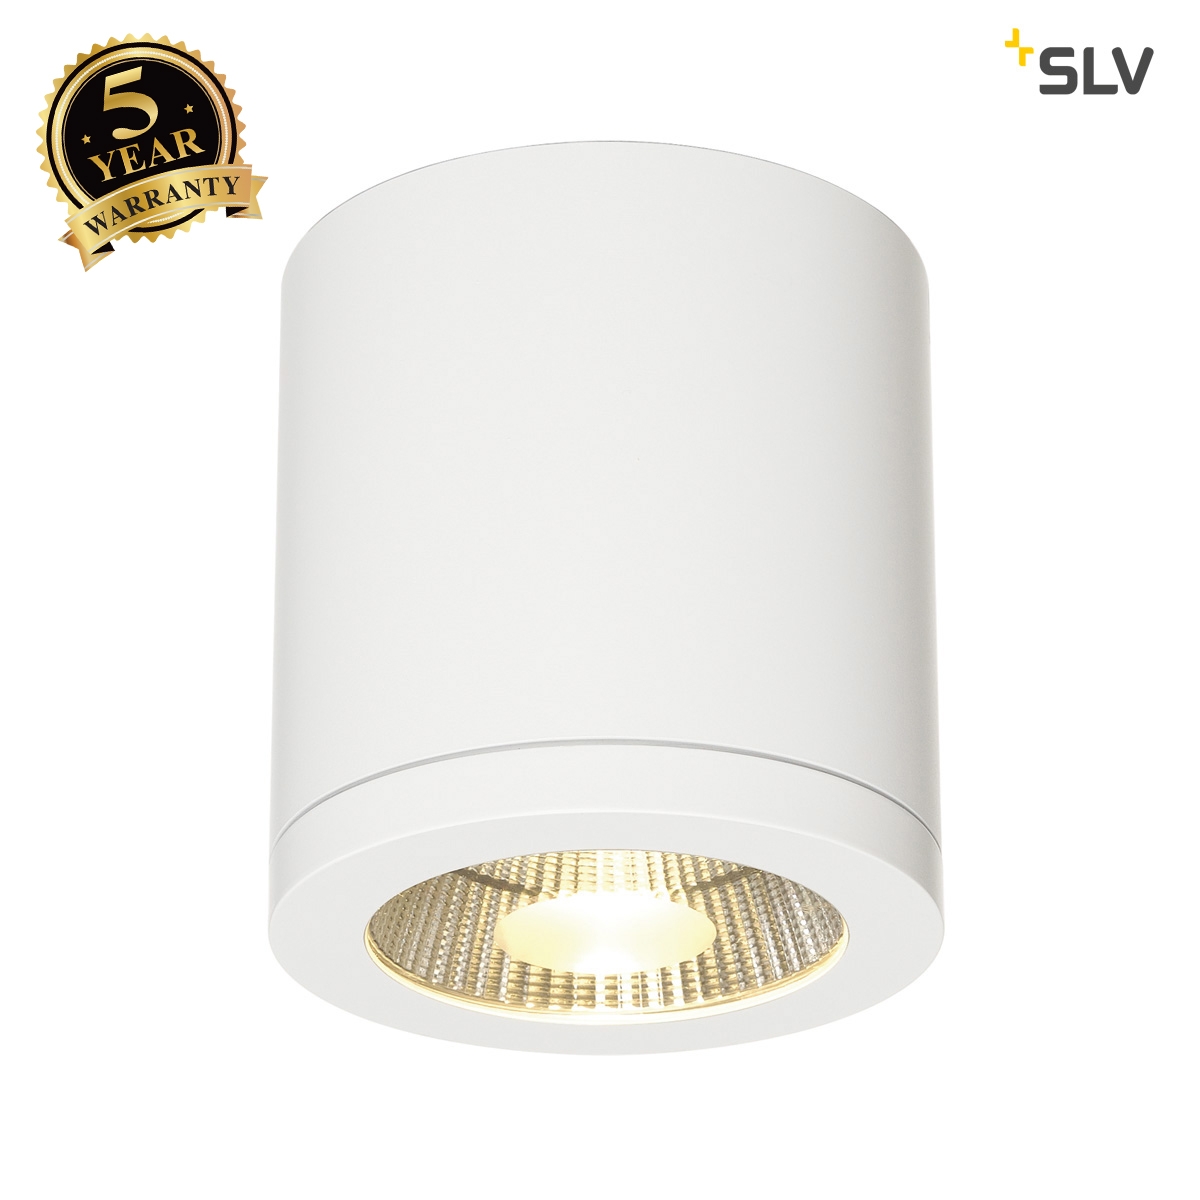 SLV ENOLA_C LED ceiling light, CL-1, round, white, 9W LED, 35°, 3000K 152101